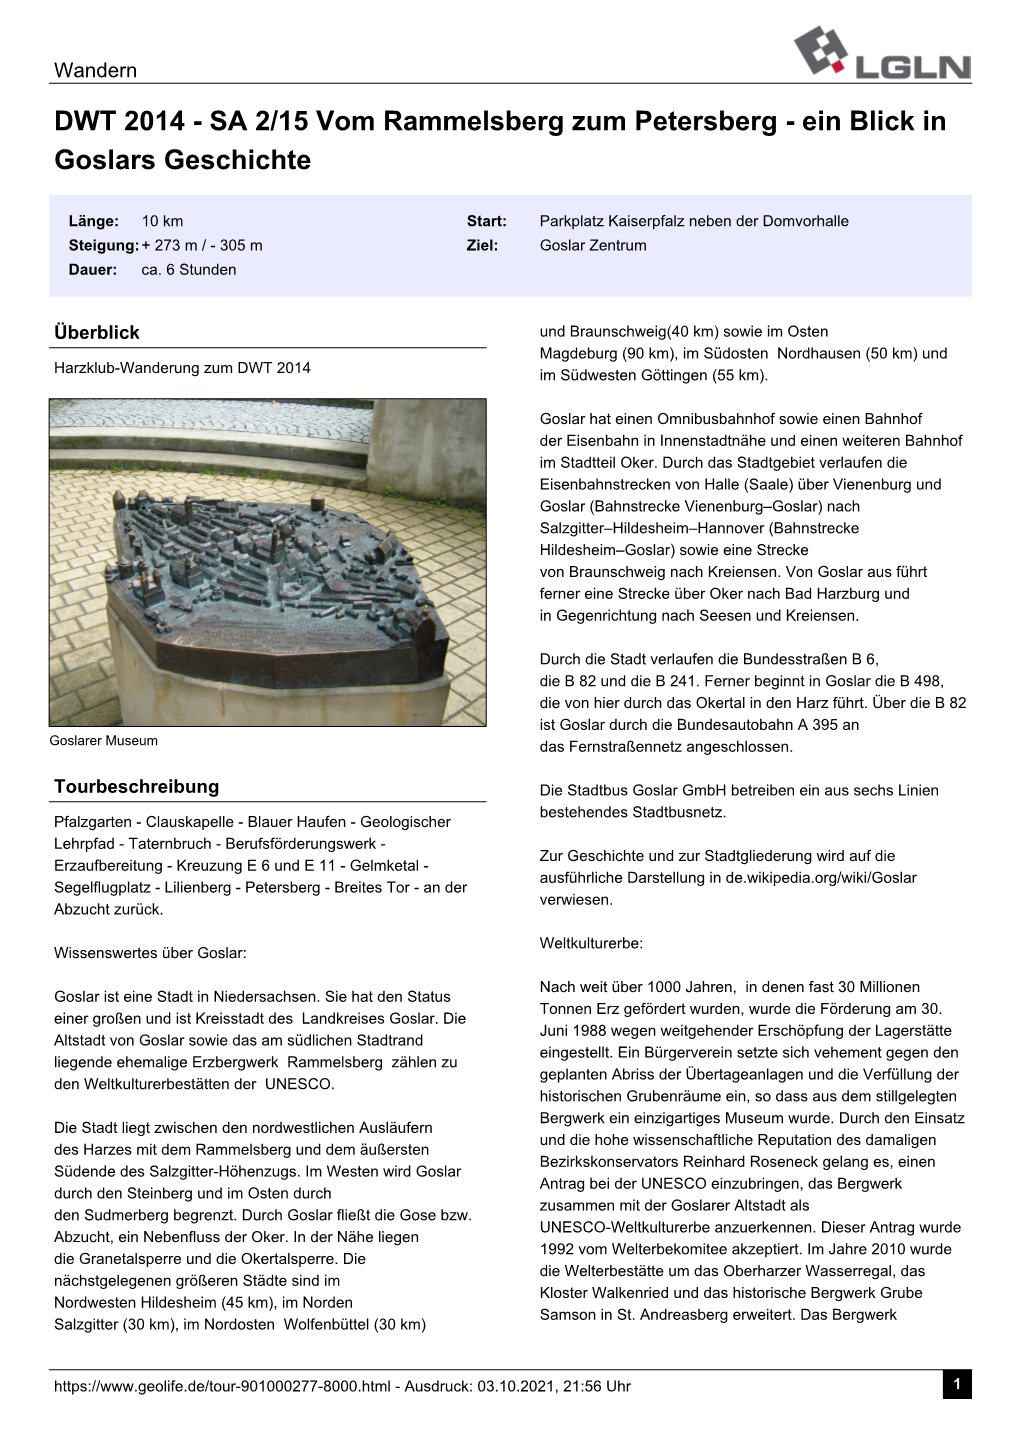 DWT 2014 - SA 2/15 Vom Rammelsberg Zum Petersberg - Ein Blick in Goslars Geschichte